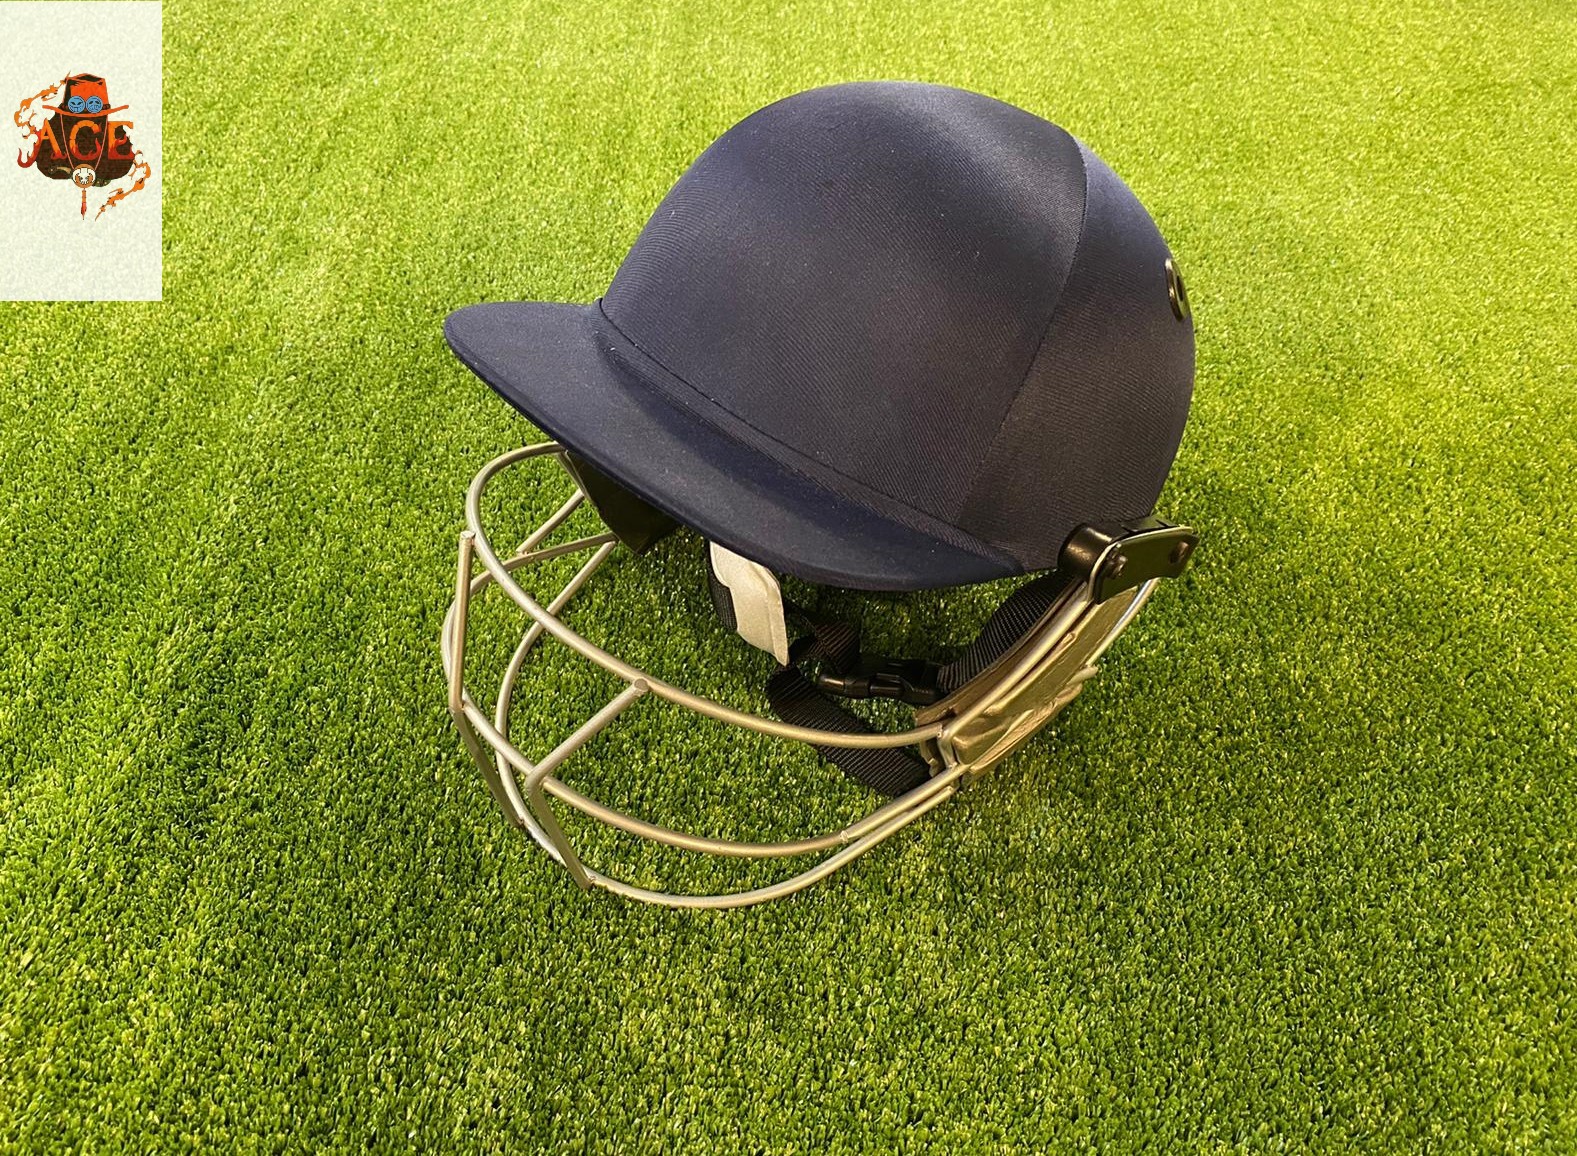 Cricket Helmet for Batsman Adult adjustable